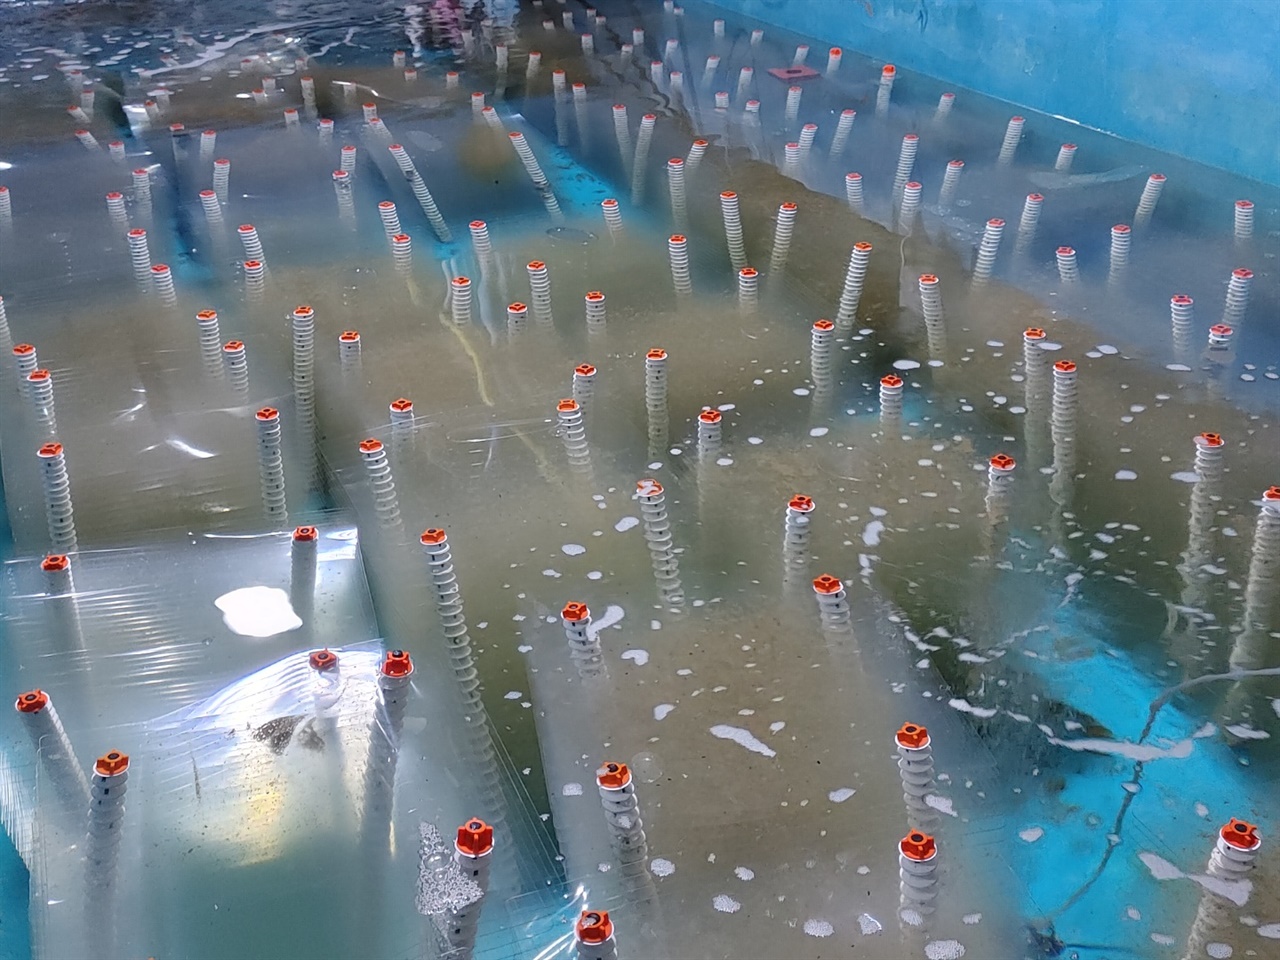  홍가리비를 1차 배양중인 수조양식장의 모습